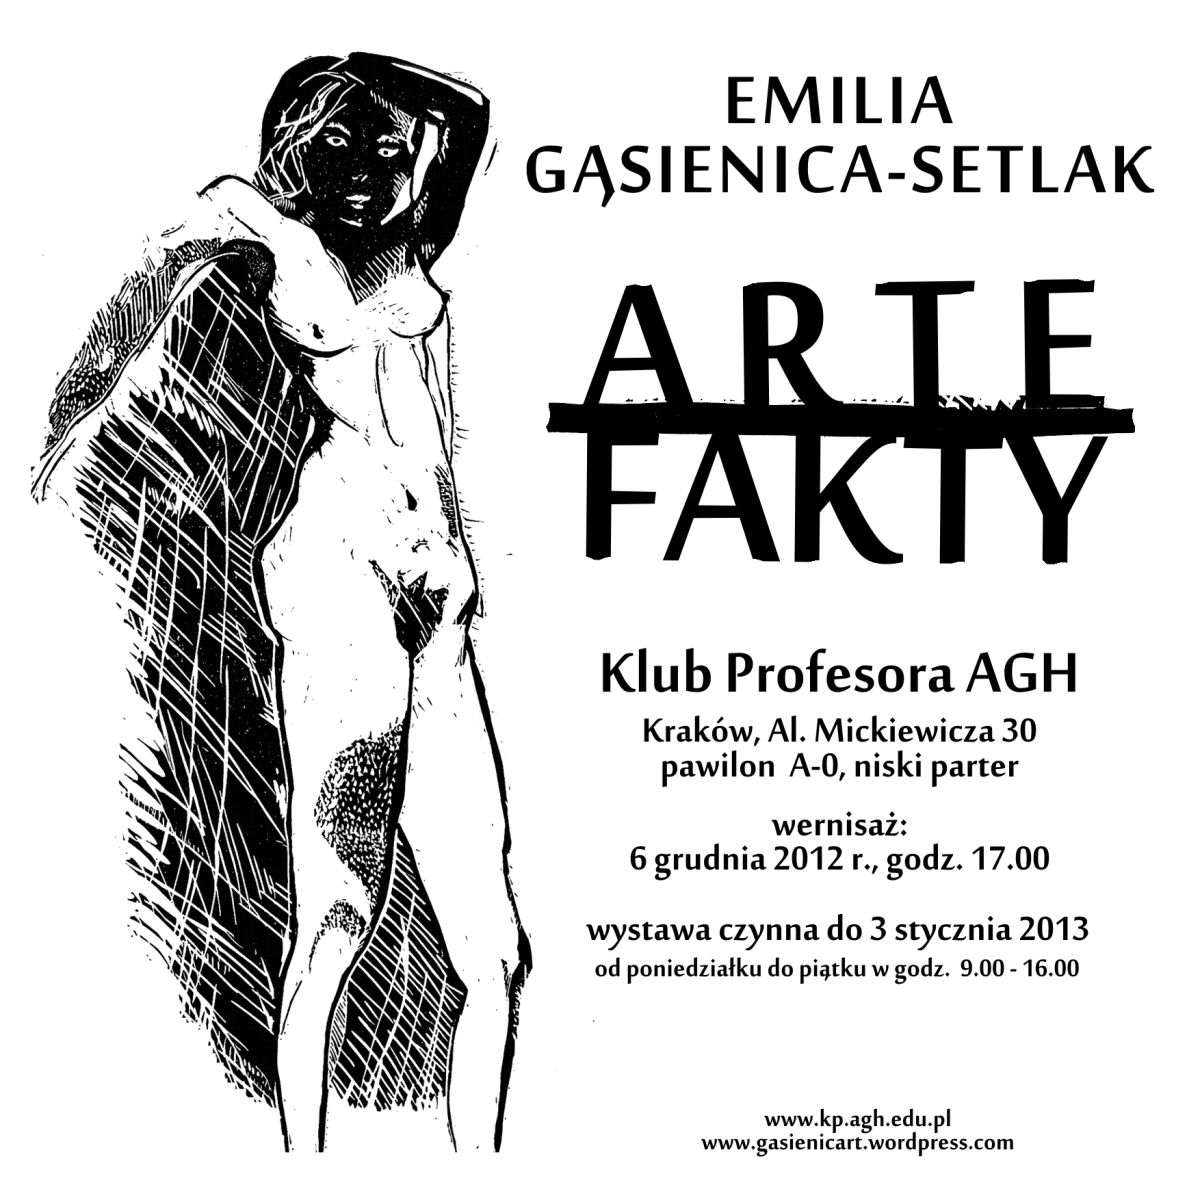 Zapraszamy na wystawę grafiki Emilii Gąsienica-Setlak  ''ARTEFAKTY''